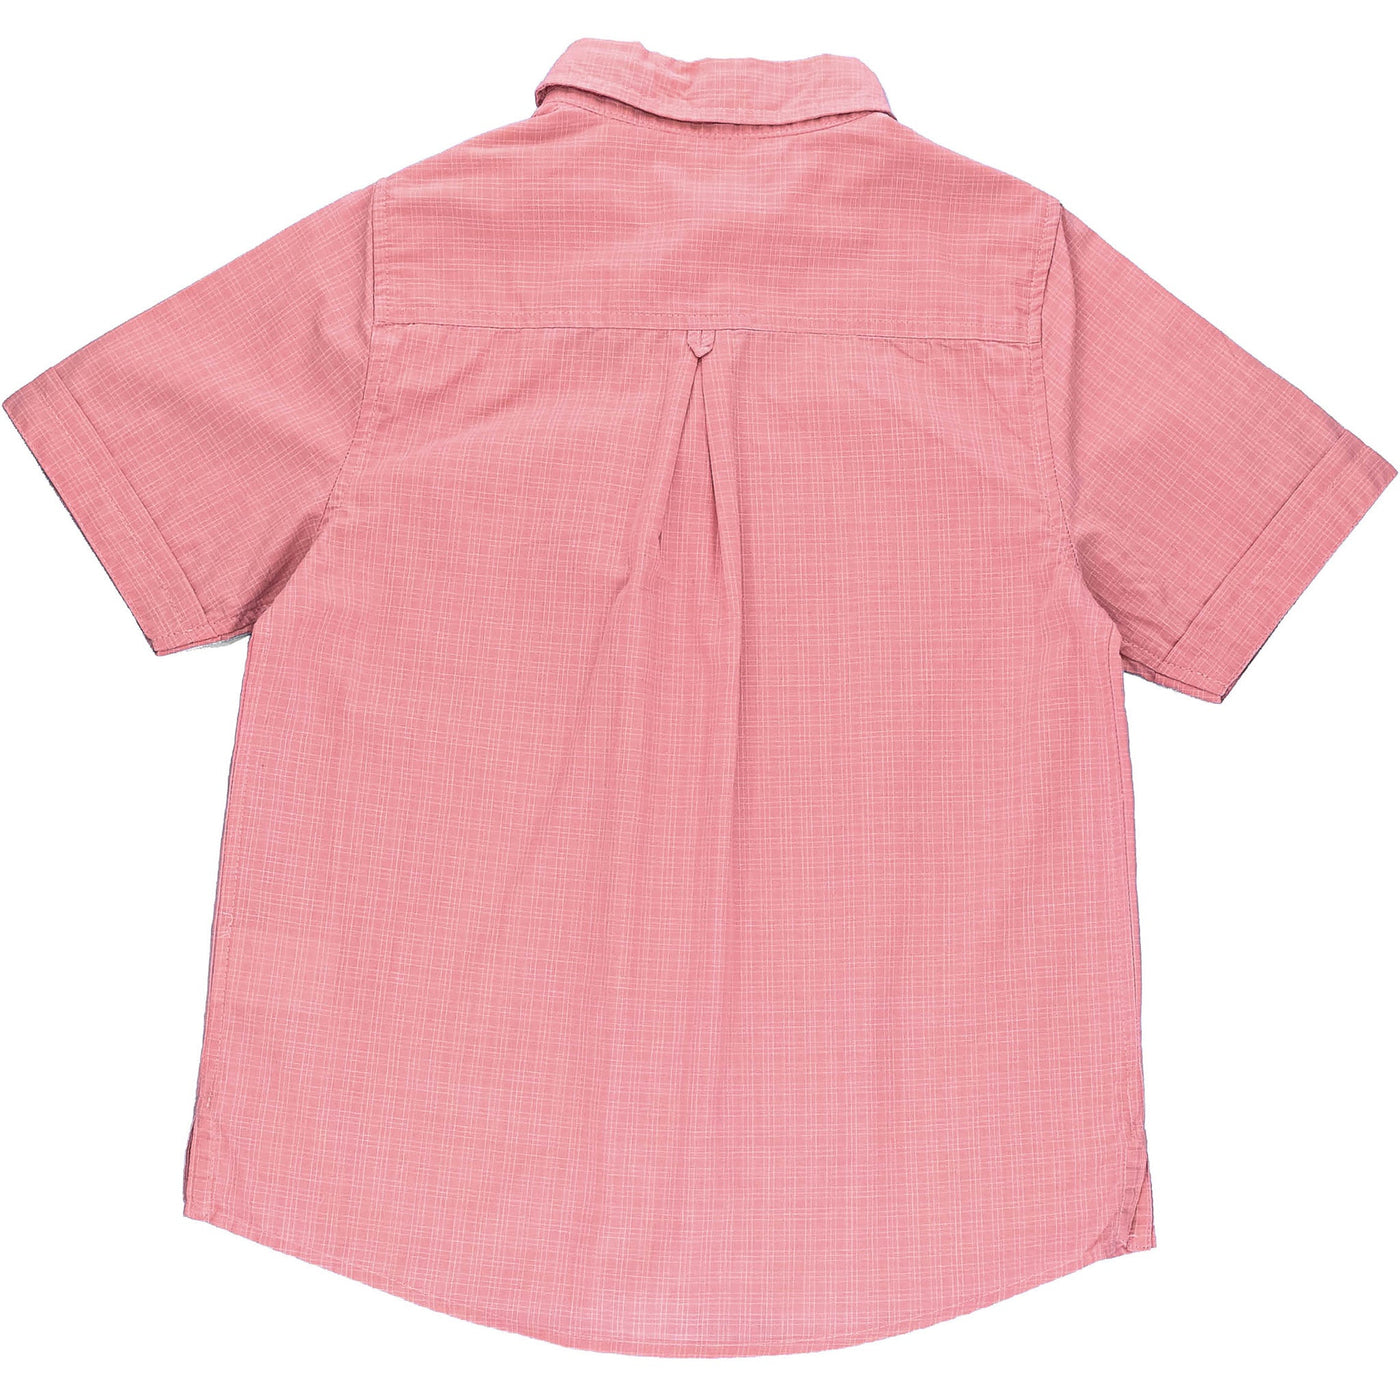 Chemise à manches courtes de seconde main en coton pour enfant garçon de 6 ans - photo verso